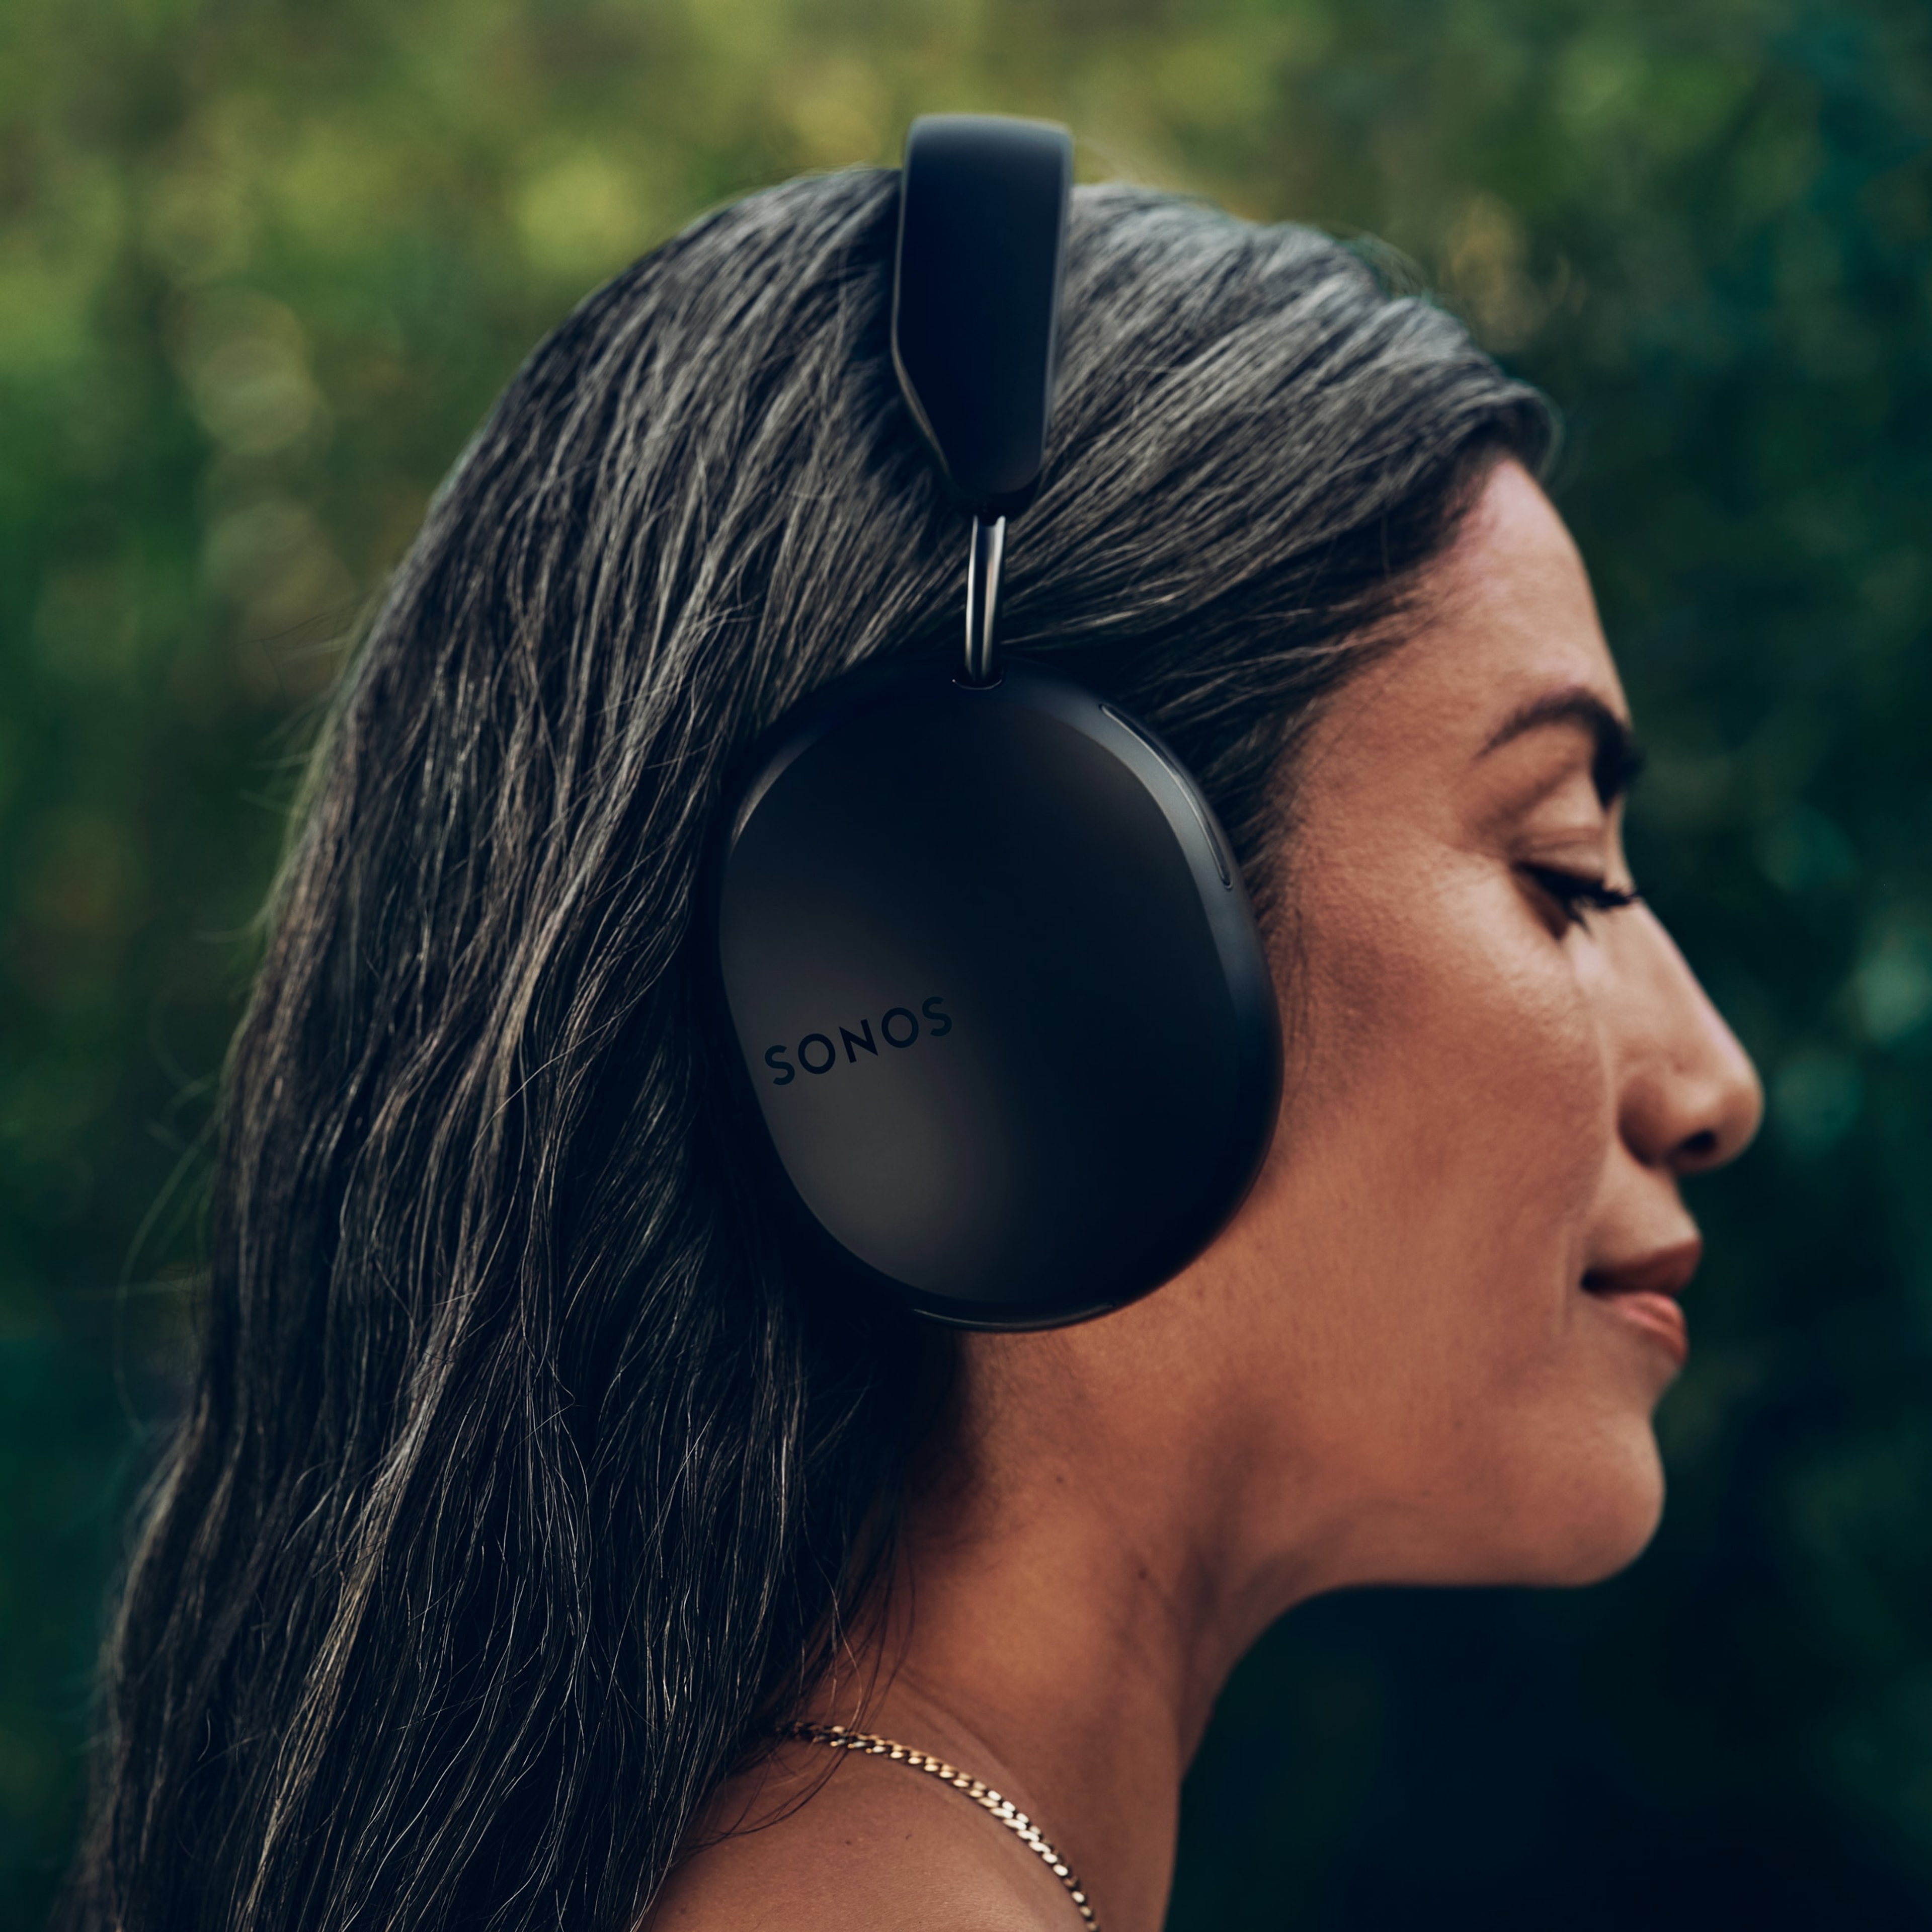 Profil d'une femme portant un casque audio Sonos Ace noir